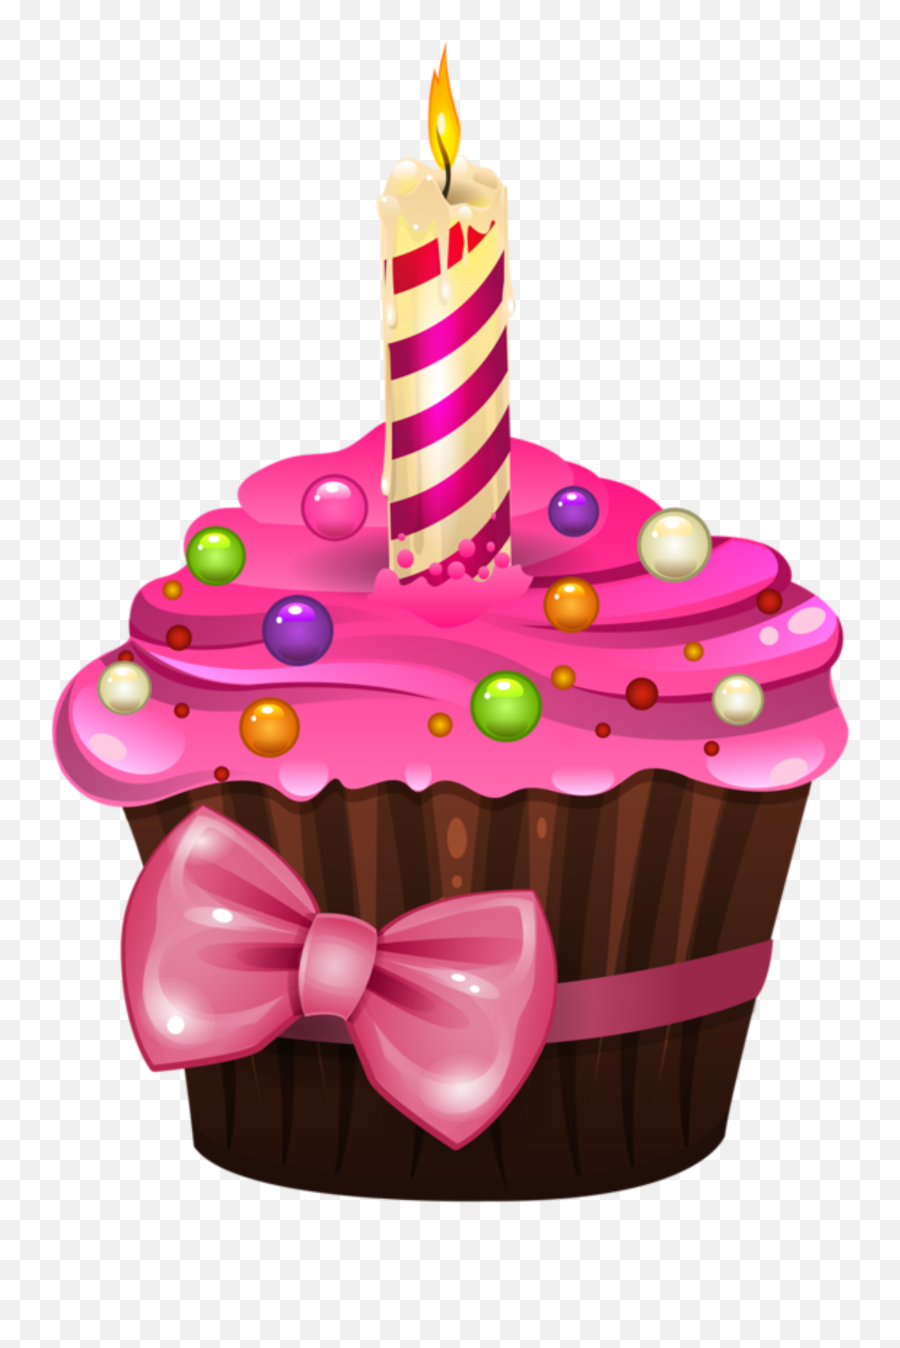 Happybirthday Felizcumpleaños Sticker By C L A S H E - Birthday Cupcake Clipart Emoji,Fotos De Pasteles De Emojis